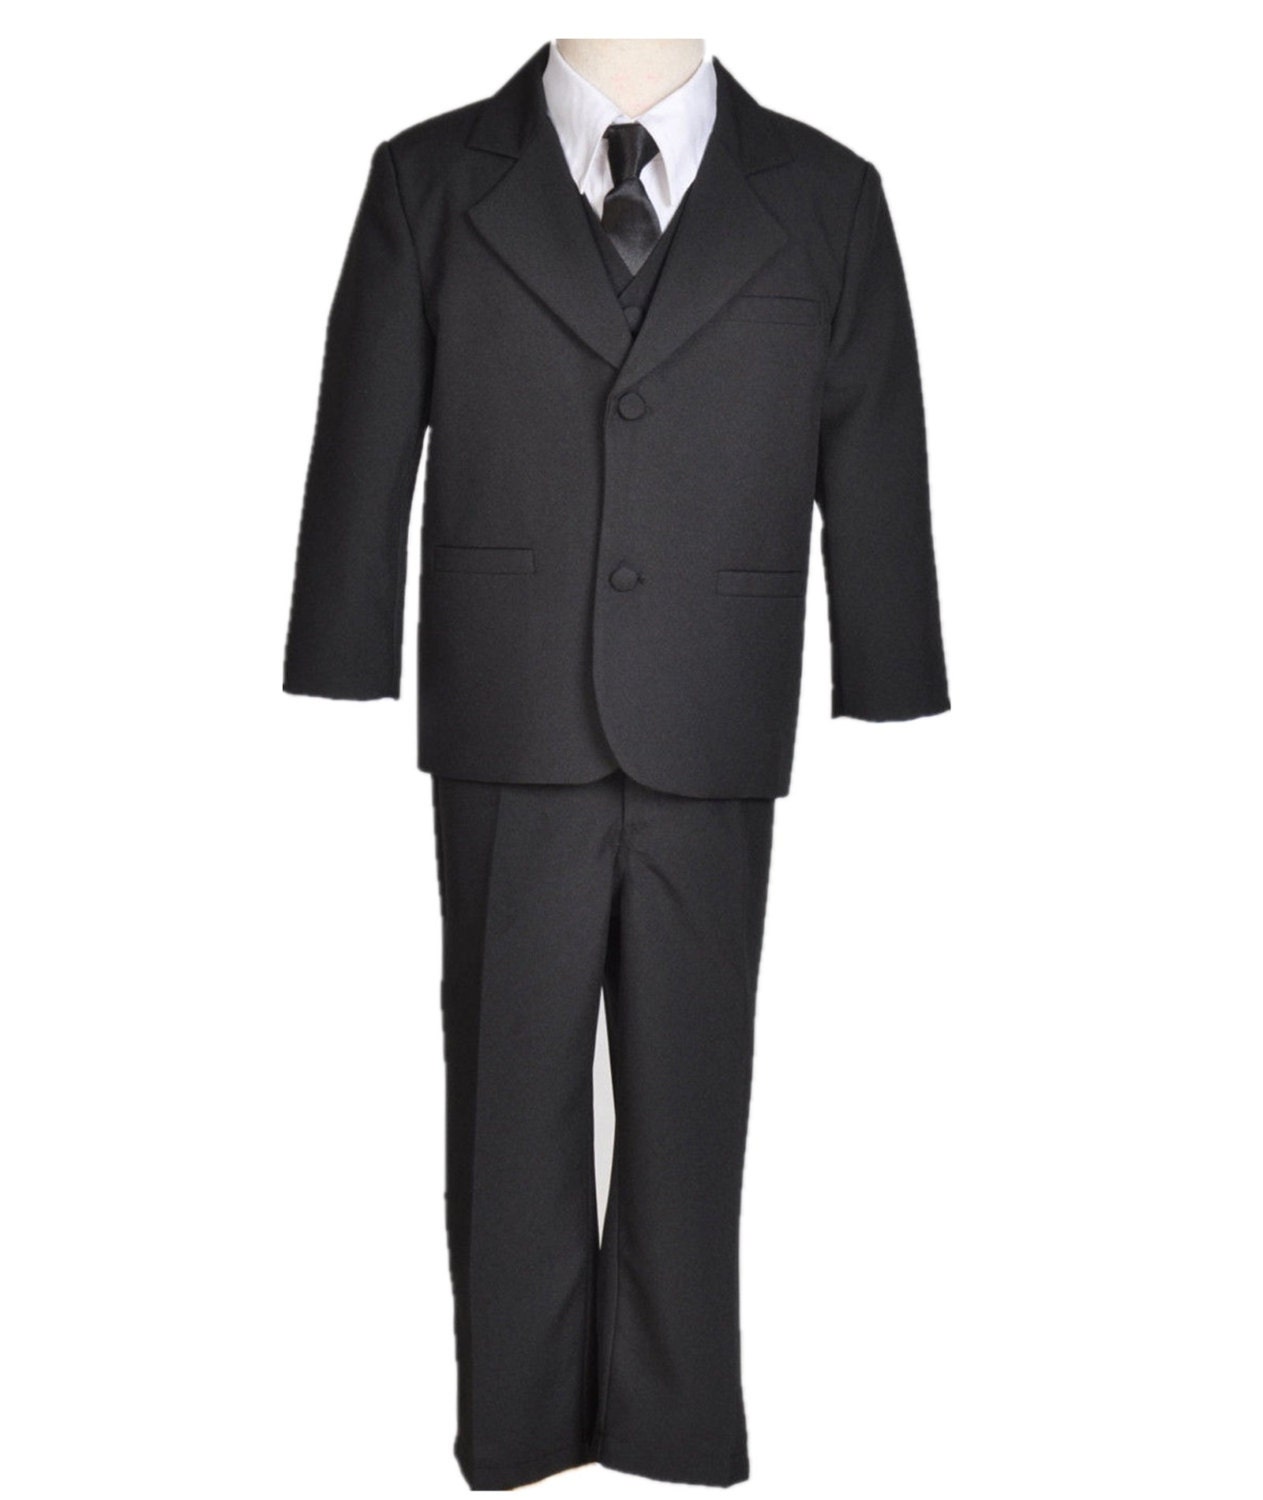 Boy Teen Black Tuxedo Suit 5-piece set vest by ekidsbridalusa